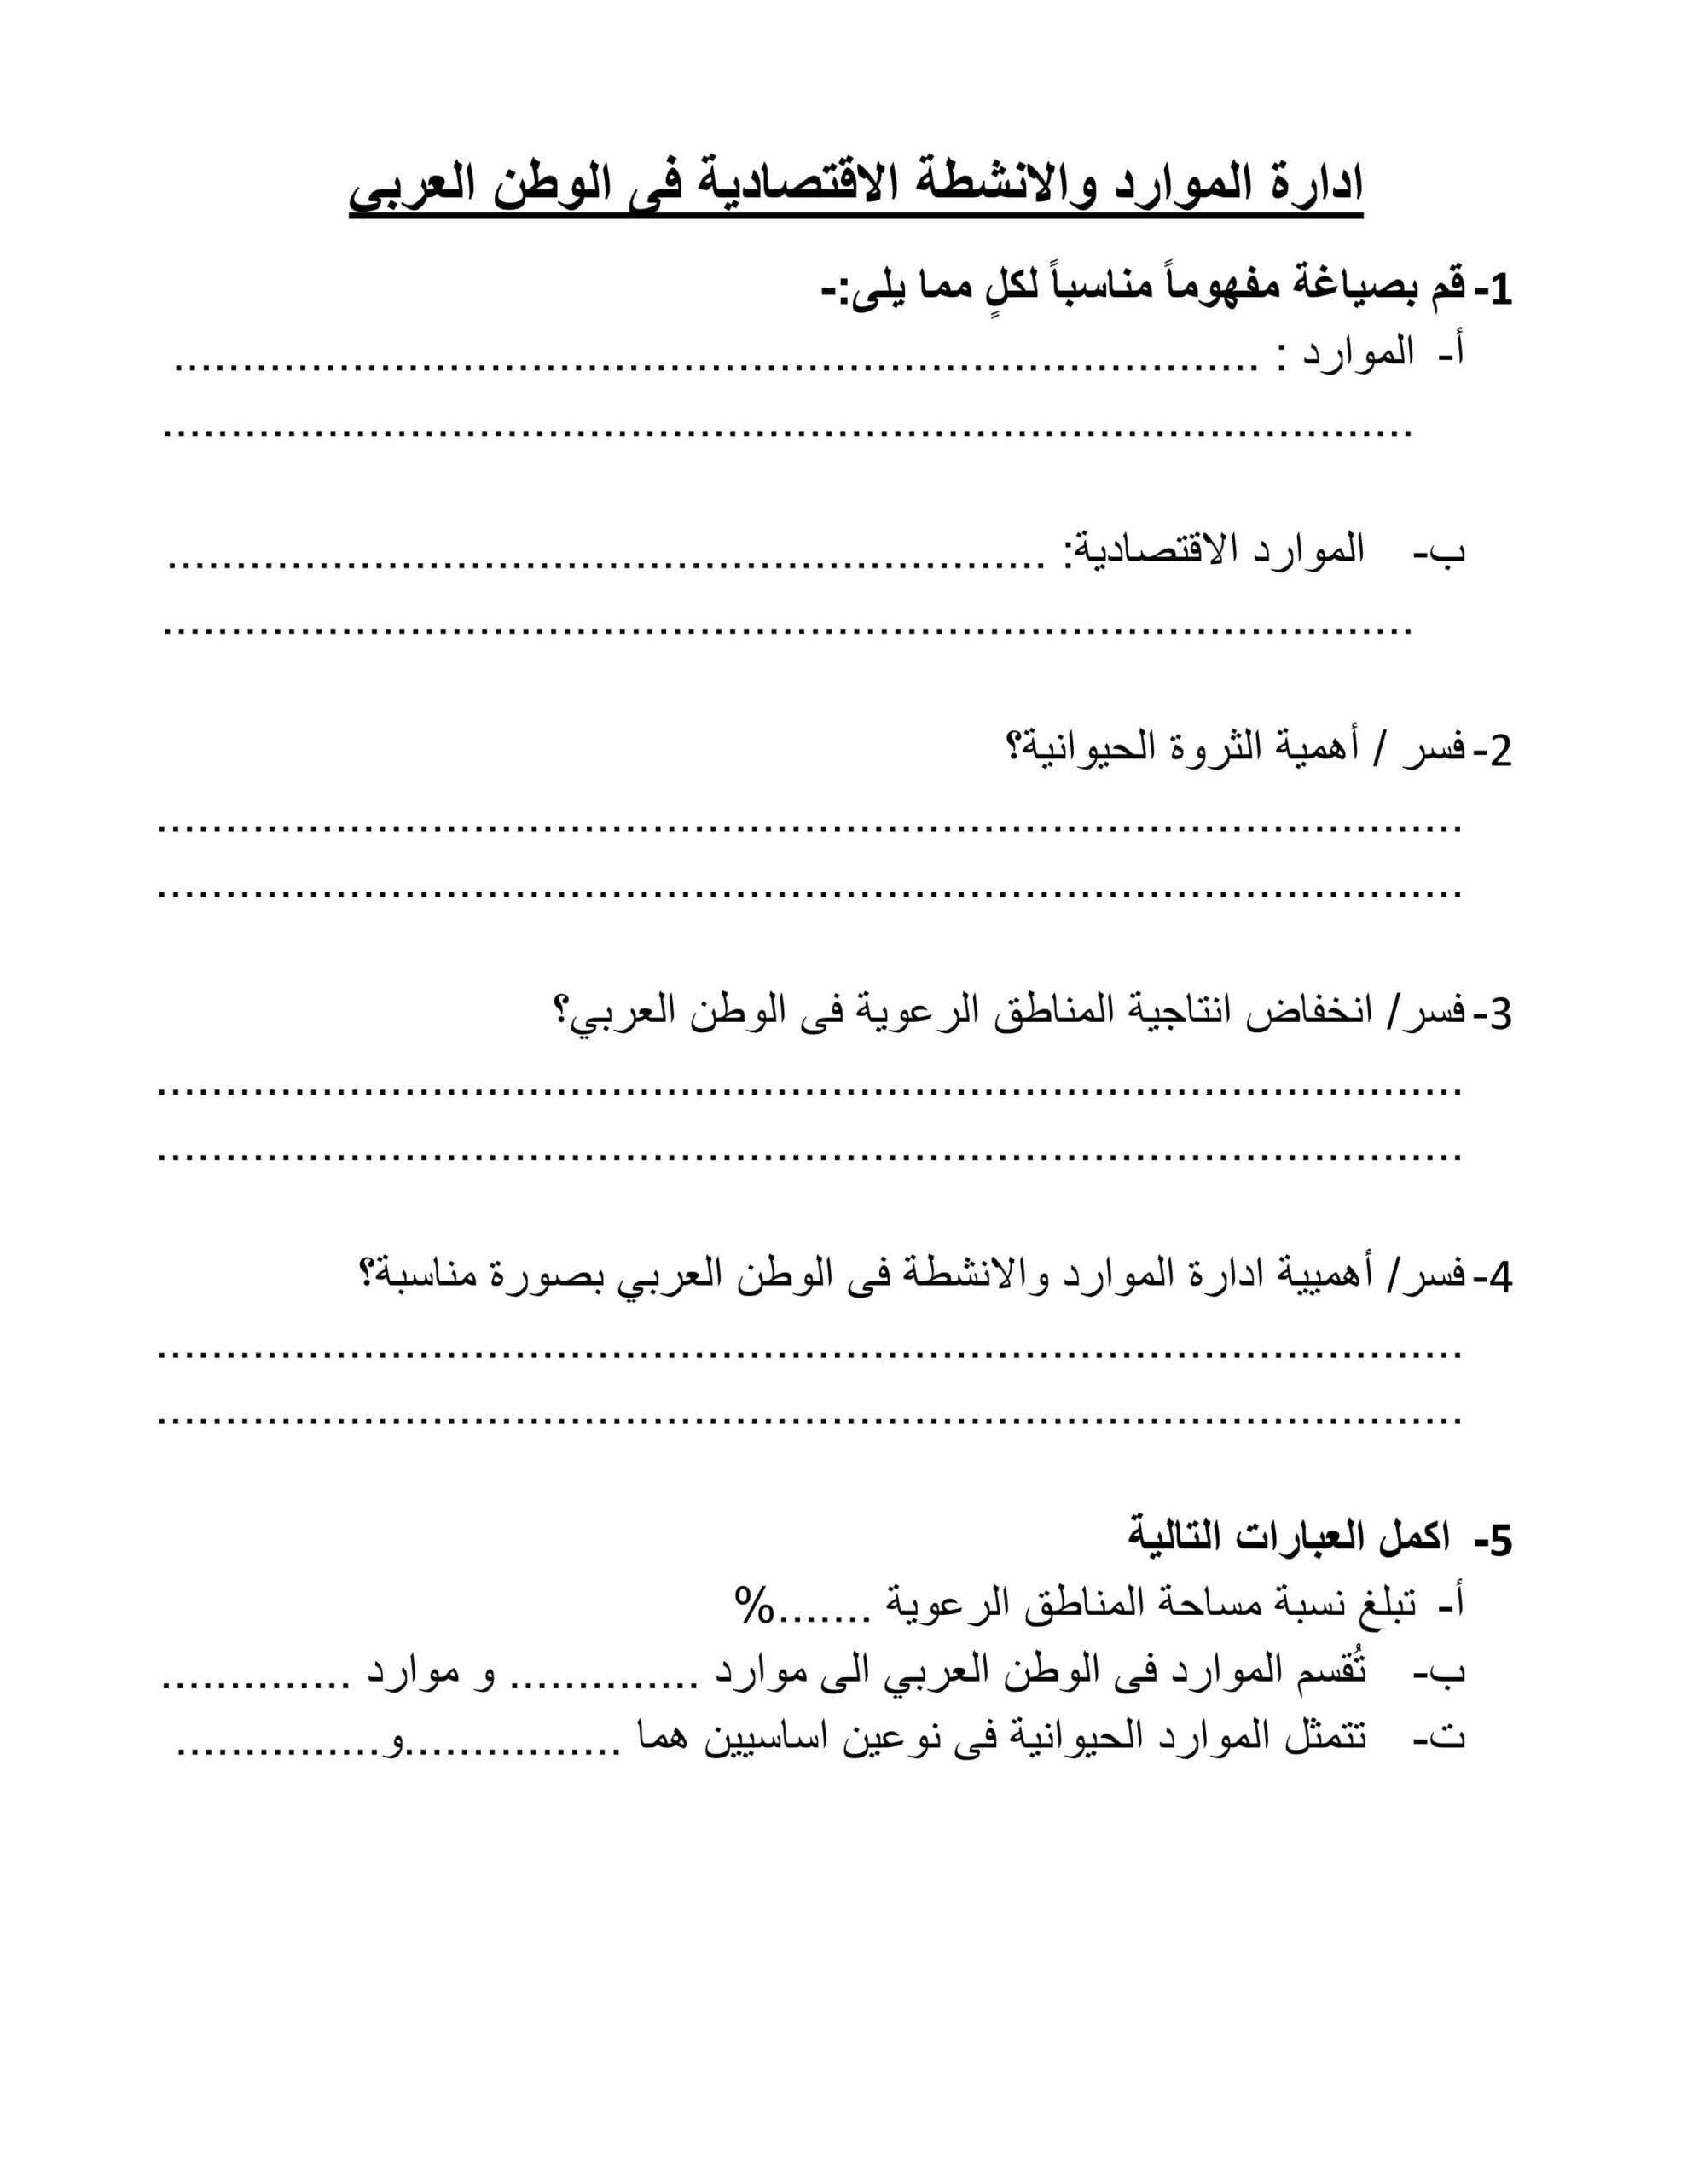 أوراق عمل إدارة الموارد والأنشطة الإقتصادية فى الوطن العربي الدراسات الإجتماعية والتربية الوطنية الصف التاسع 